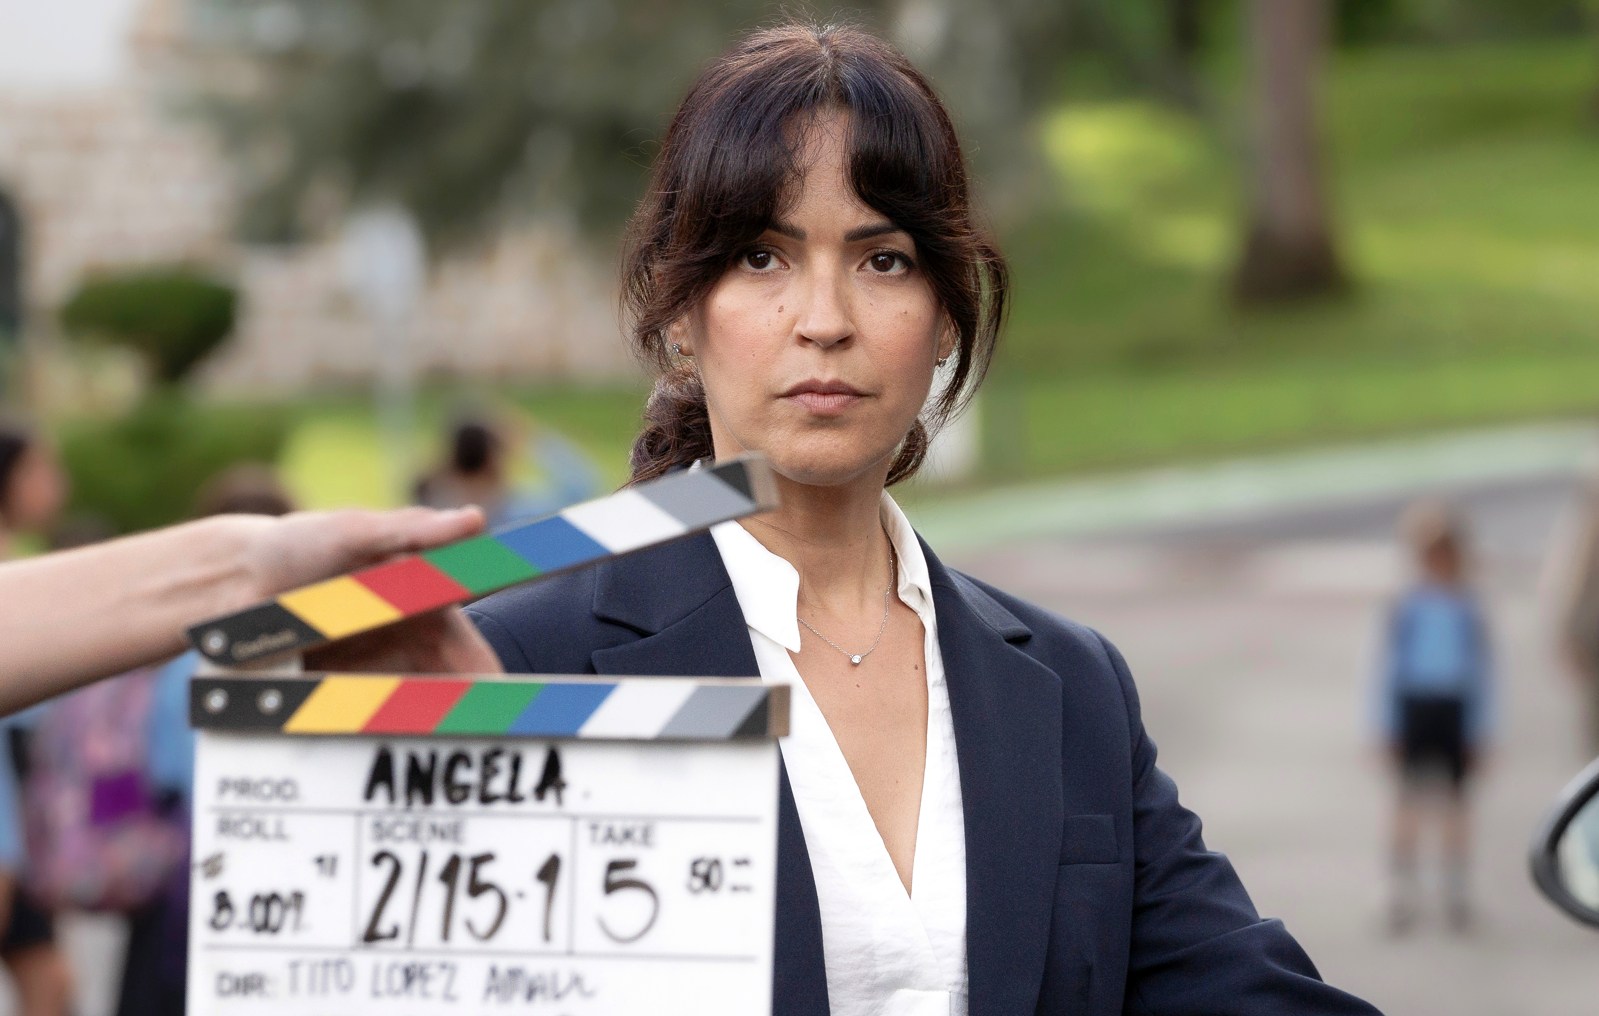 Verónica Sánchez da vida a la gran protagonista de la serie de Antena 3 Ángela